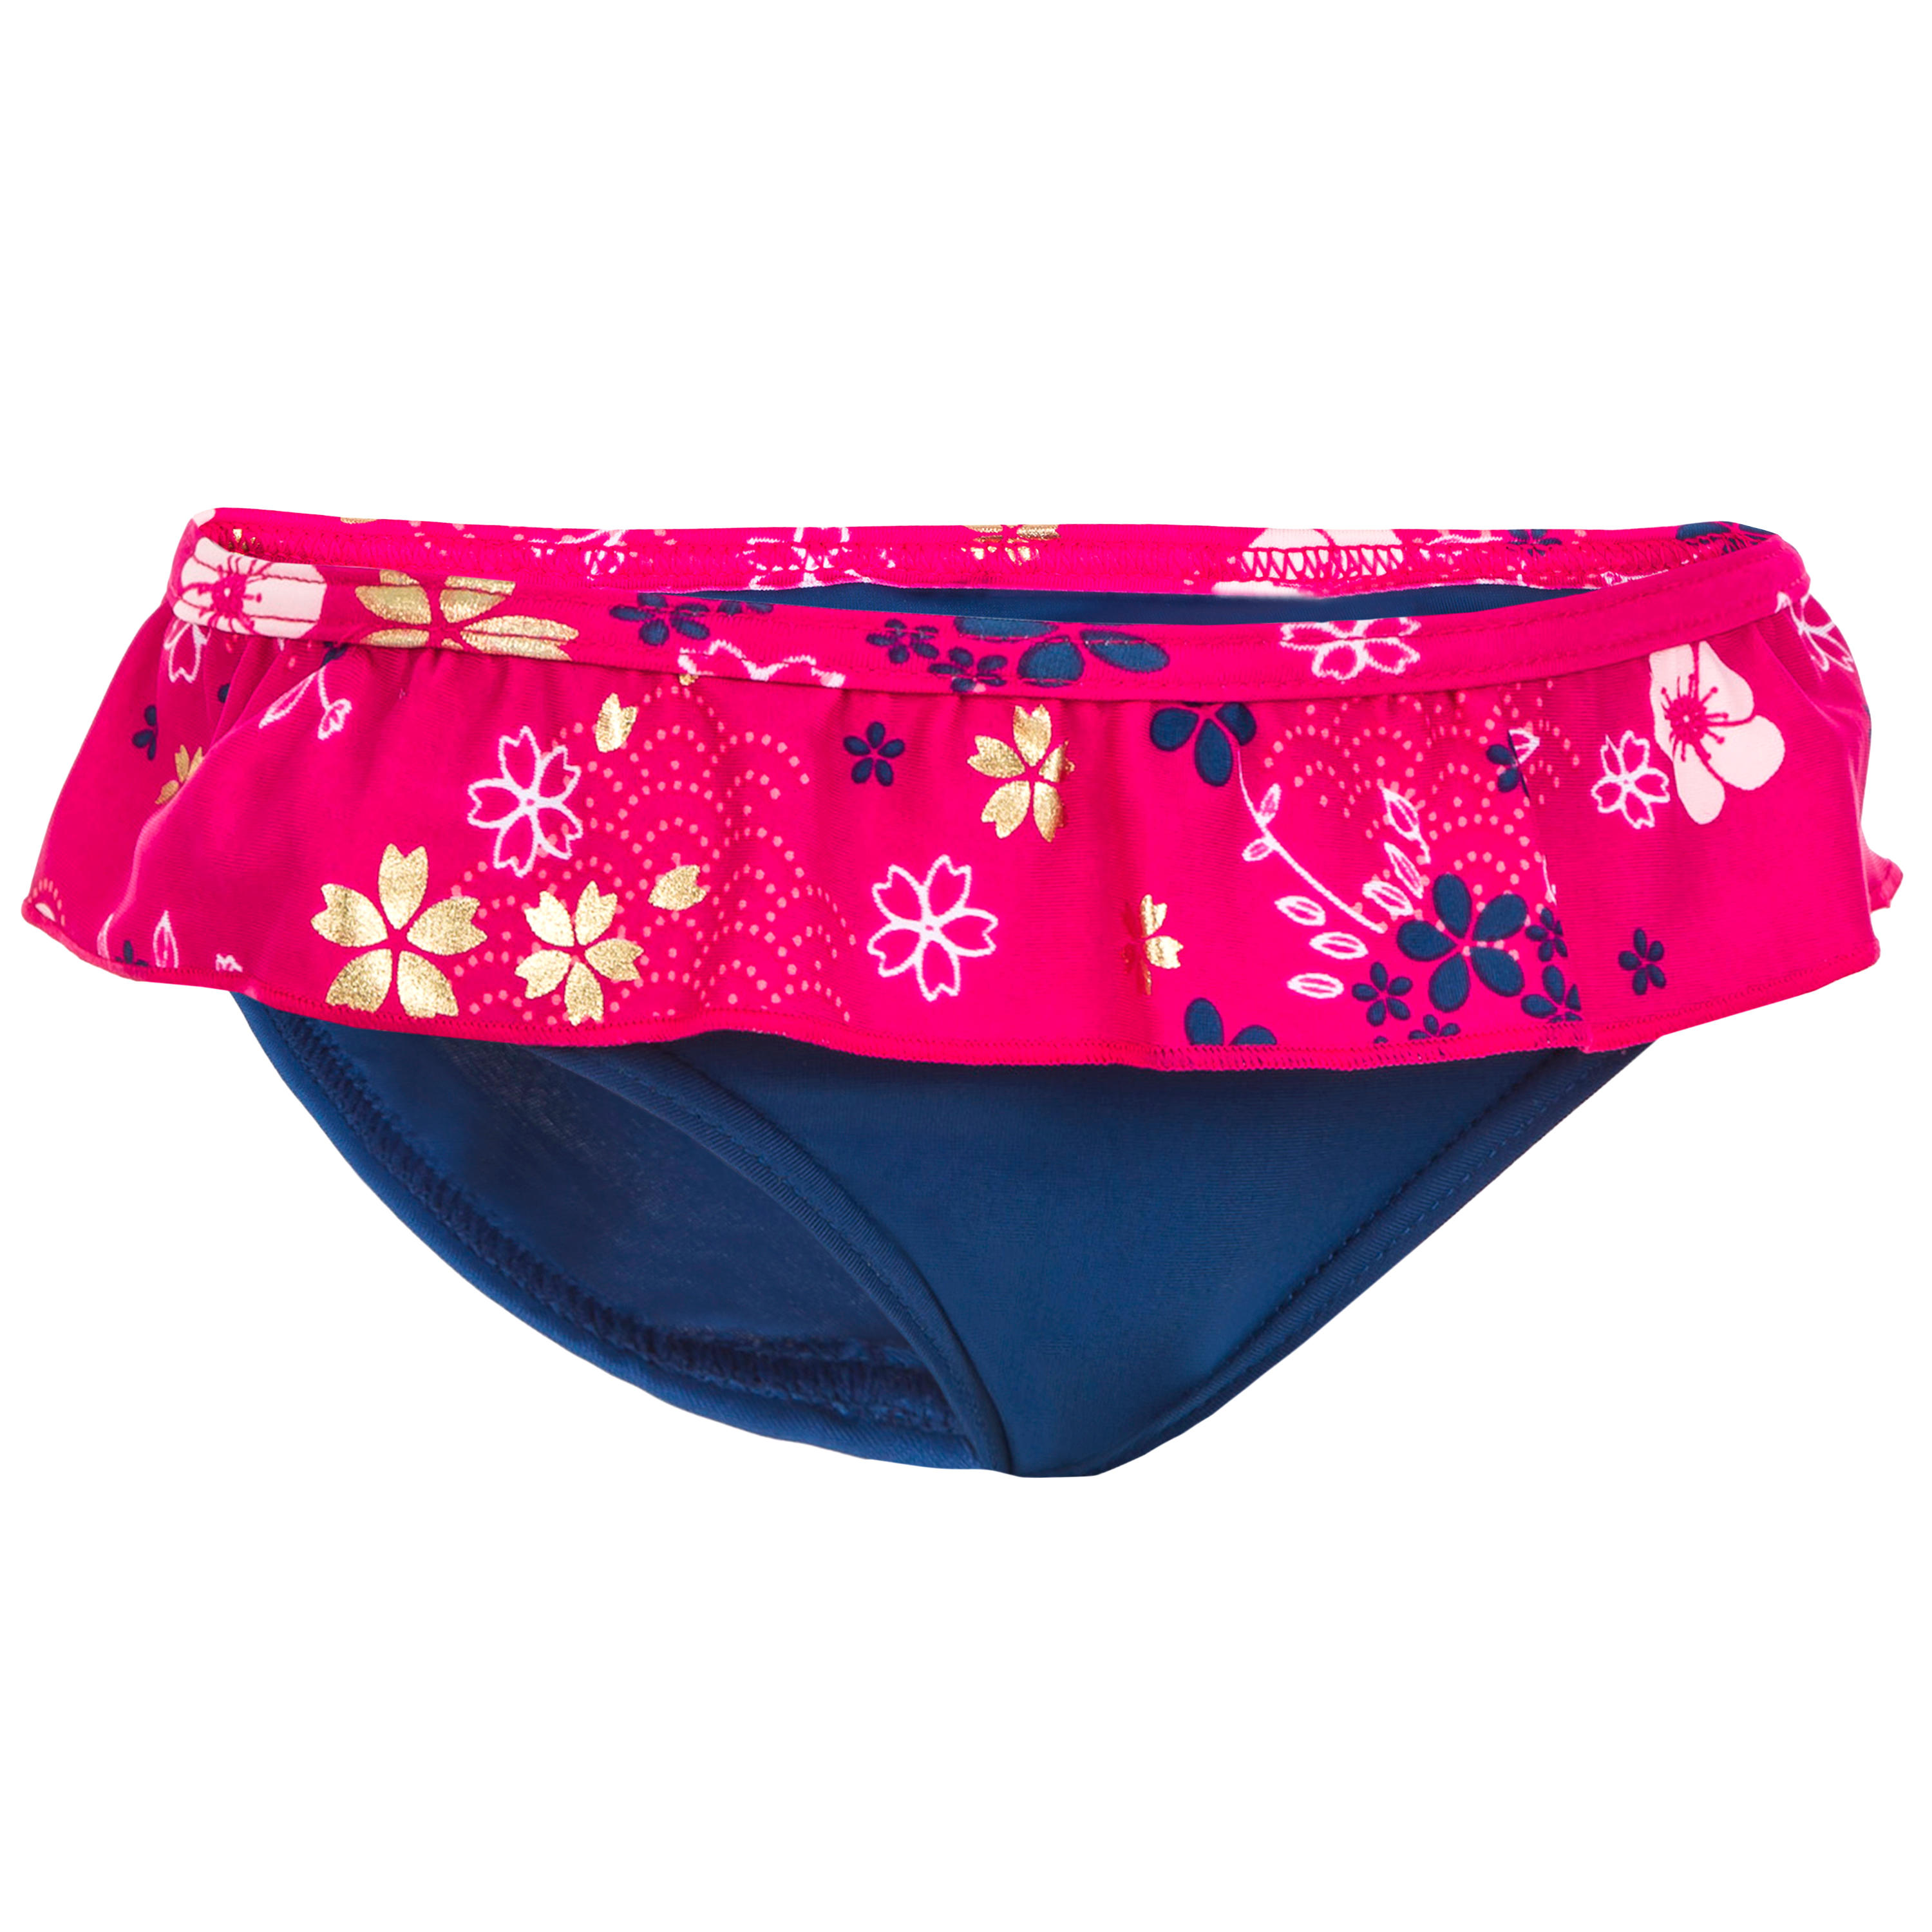 Baby One-Piece Swim Briefs Swimsuit Bottoms - Blue Flower Print 1/4